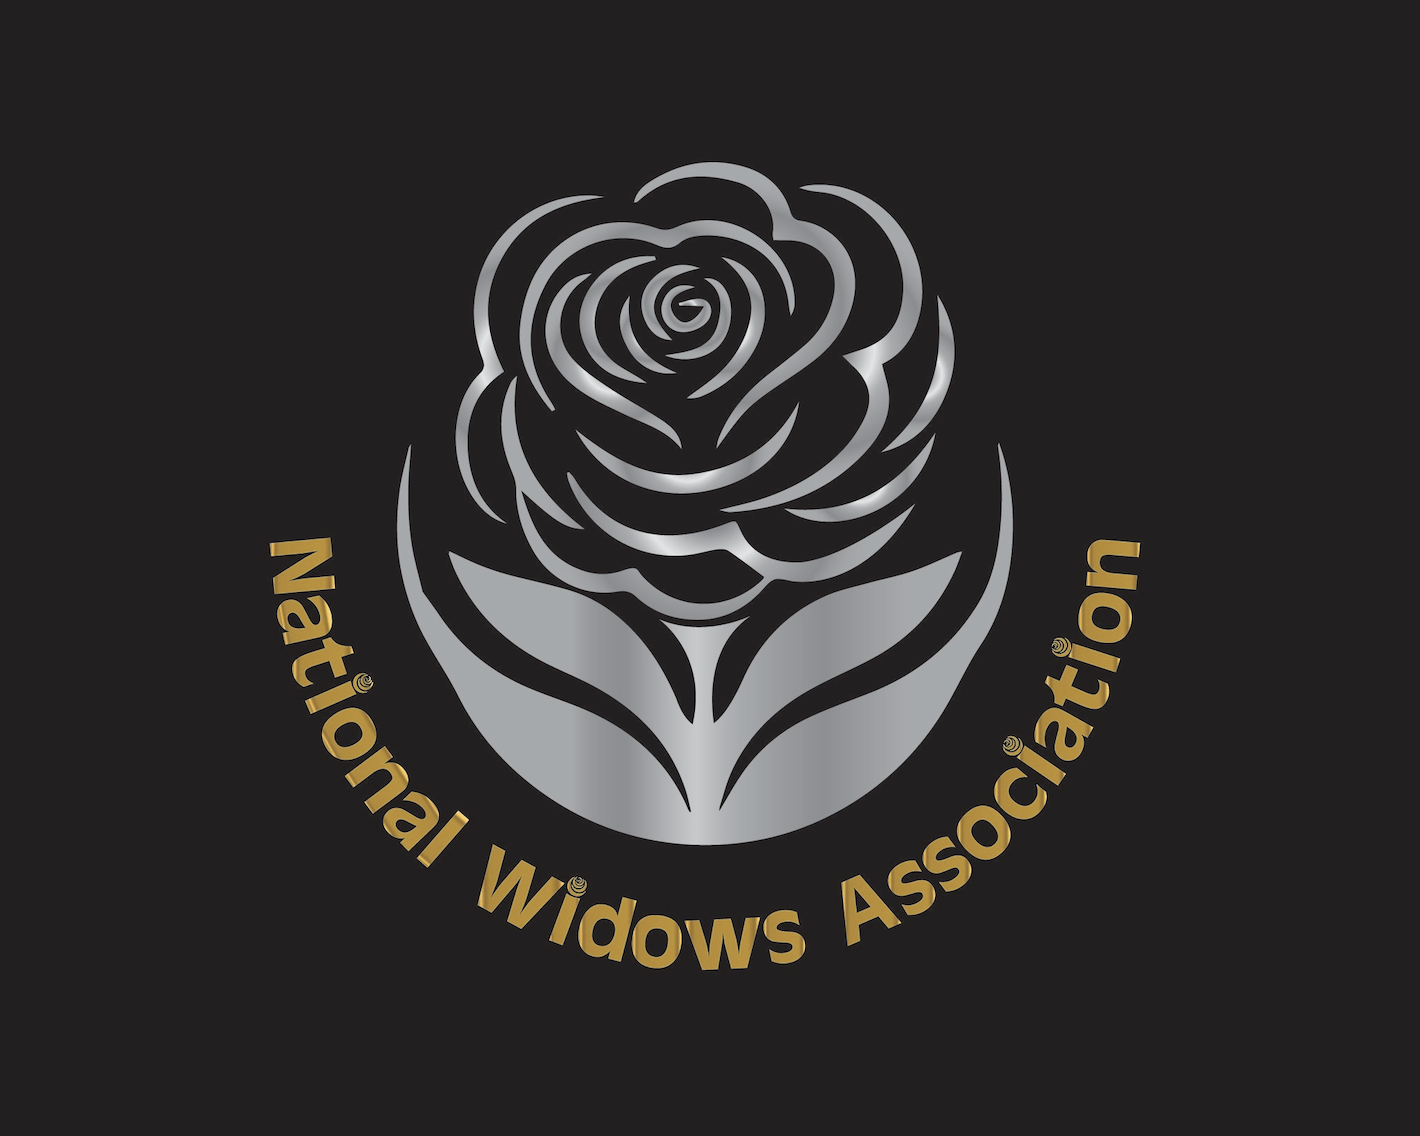 The National Widows Association Logo